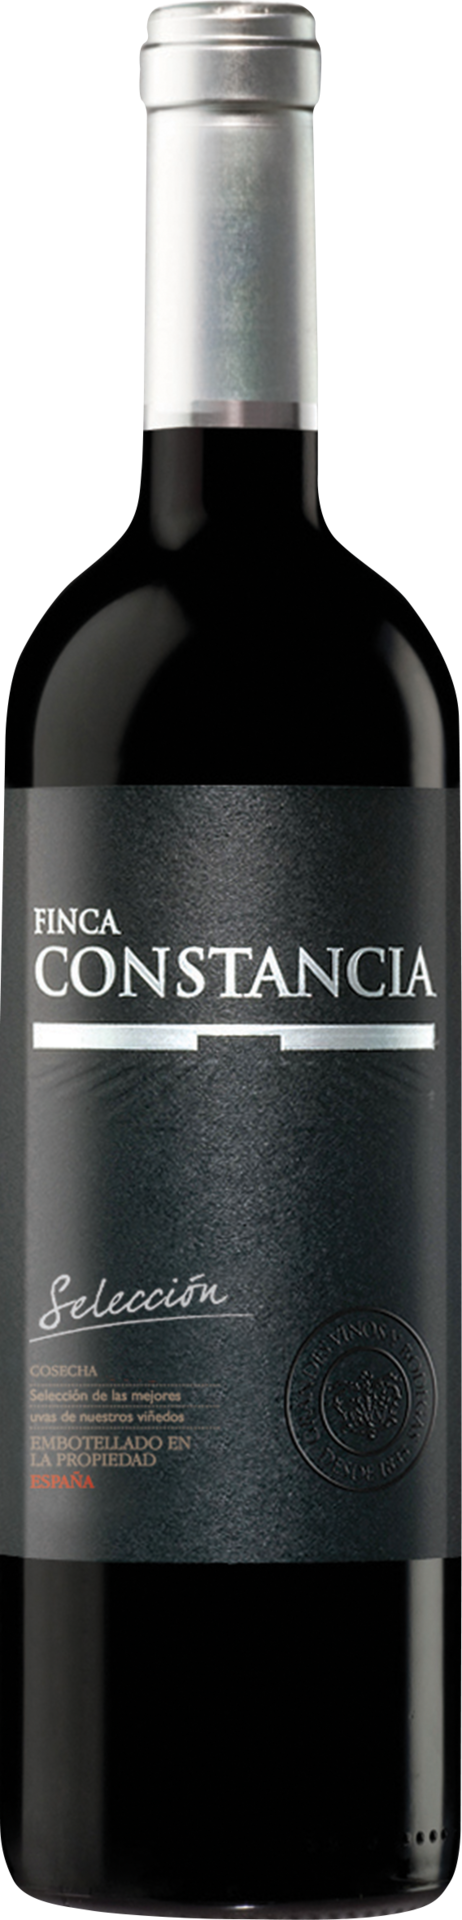 Finca Constancia Selección - 2019